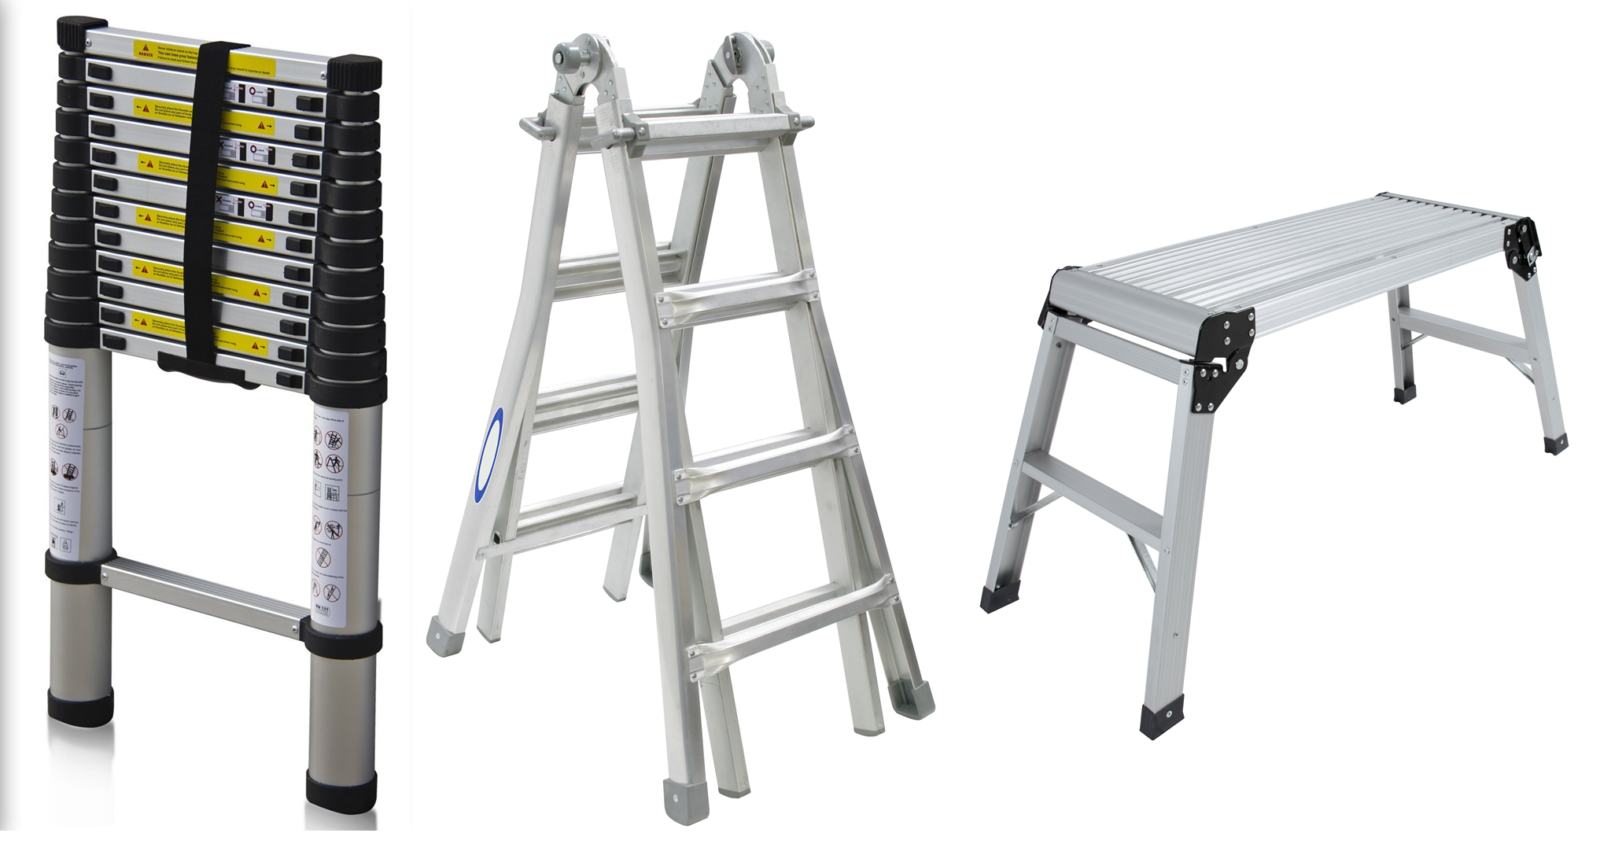 EMATEC Ladders